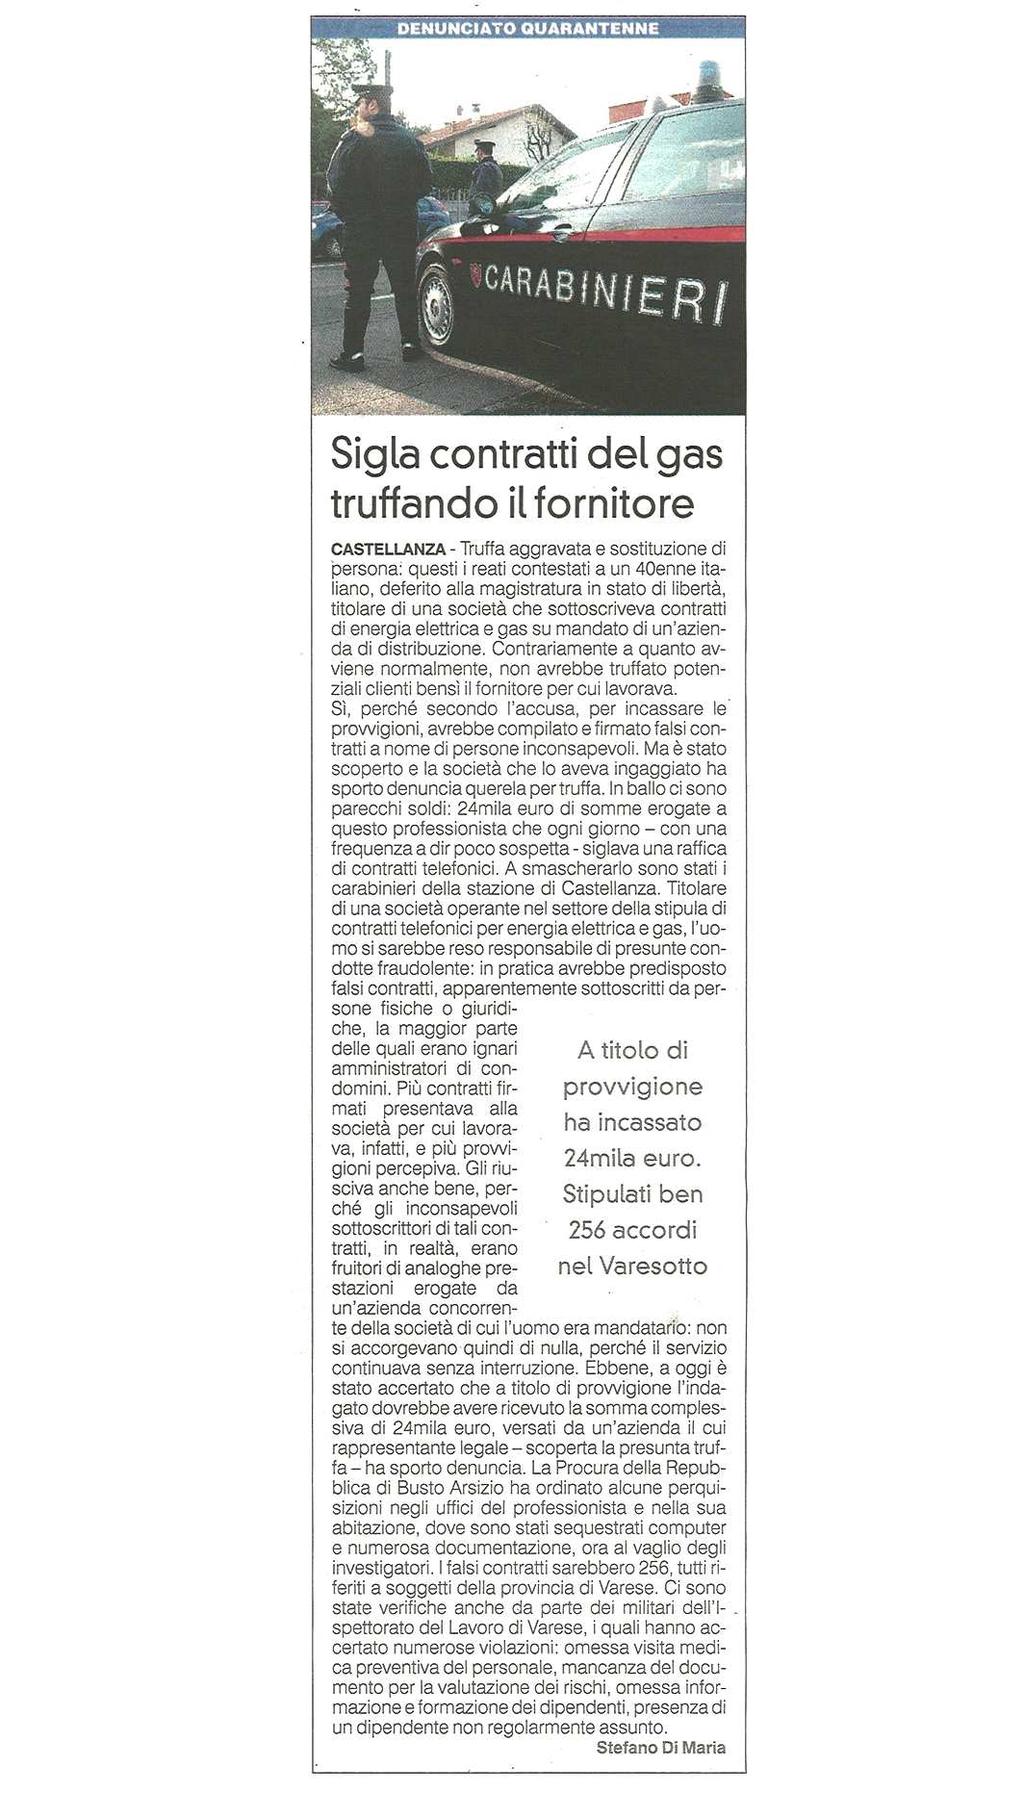 data rassegna 15/06/2017 Denunciato qyuarantenne SIGLA CONTRATT DEL GAS TRUFFANDO IL FORNITORE